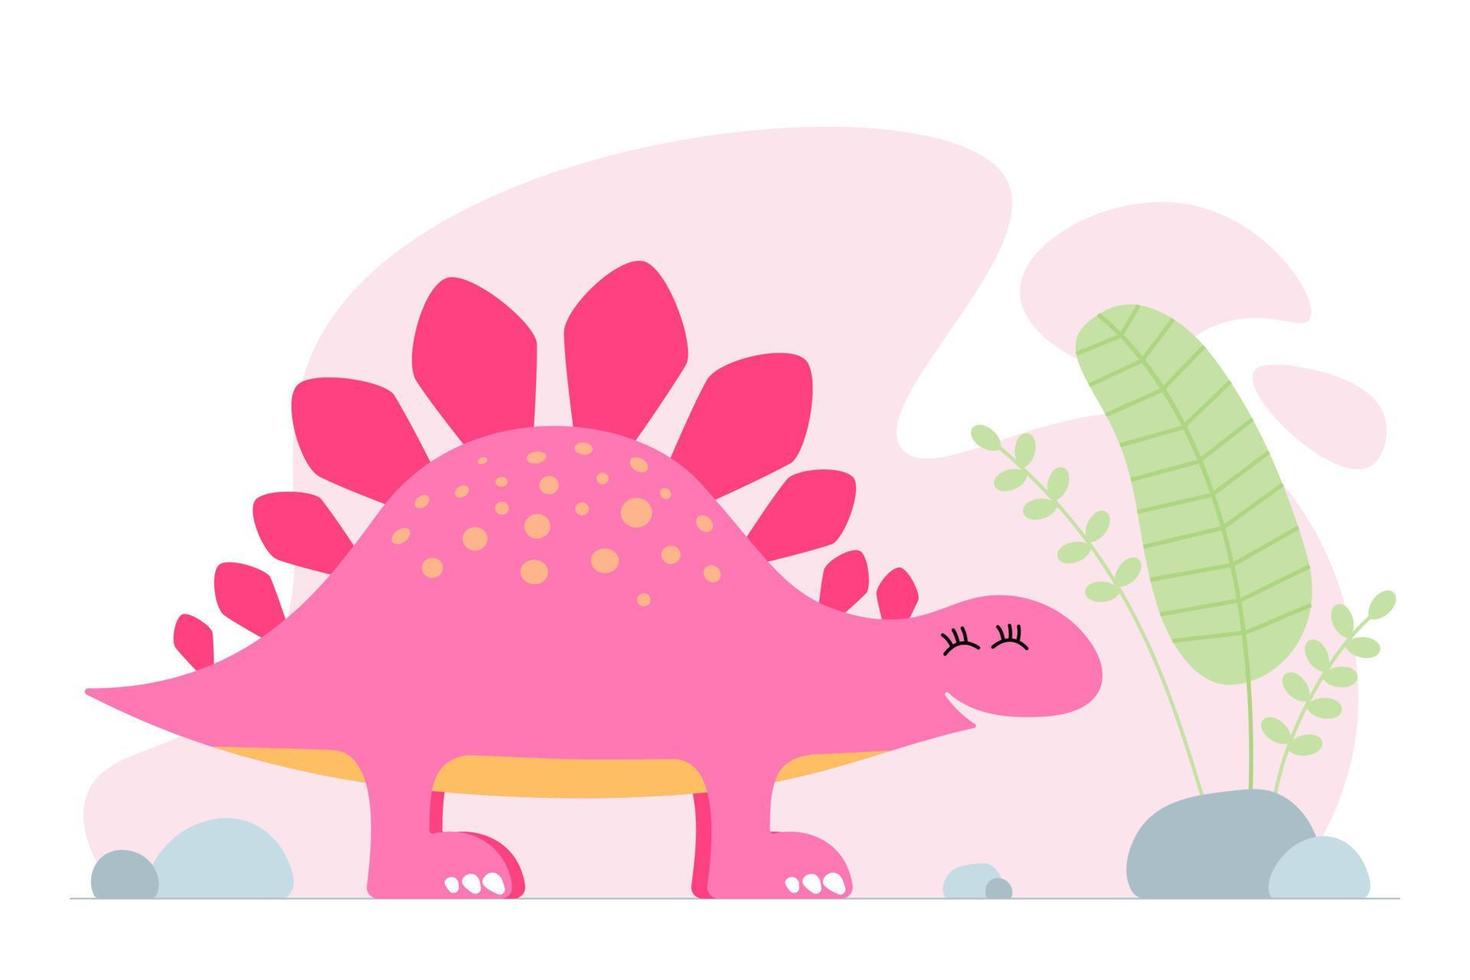 mignon dinosaure rose. gentil bébé souriant stegosaurus dinosaure. bannière d'impression de conception graphique de bébé de dessin animé. conception originale de fille créative. dessin à la main illustration vectorielle eps vecteur